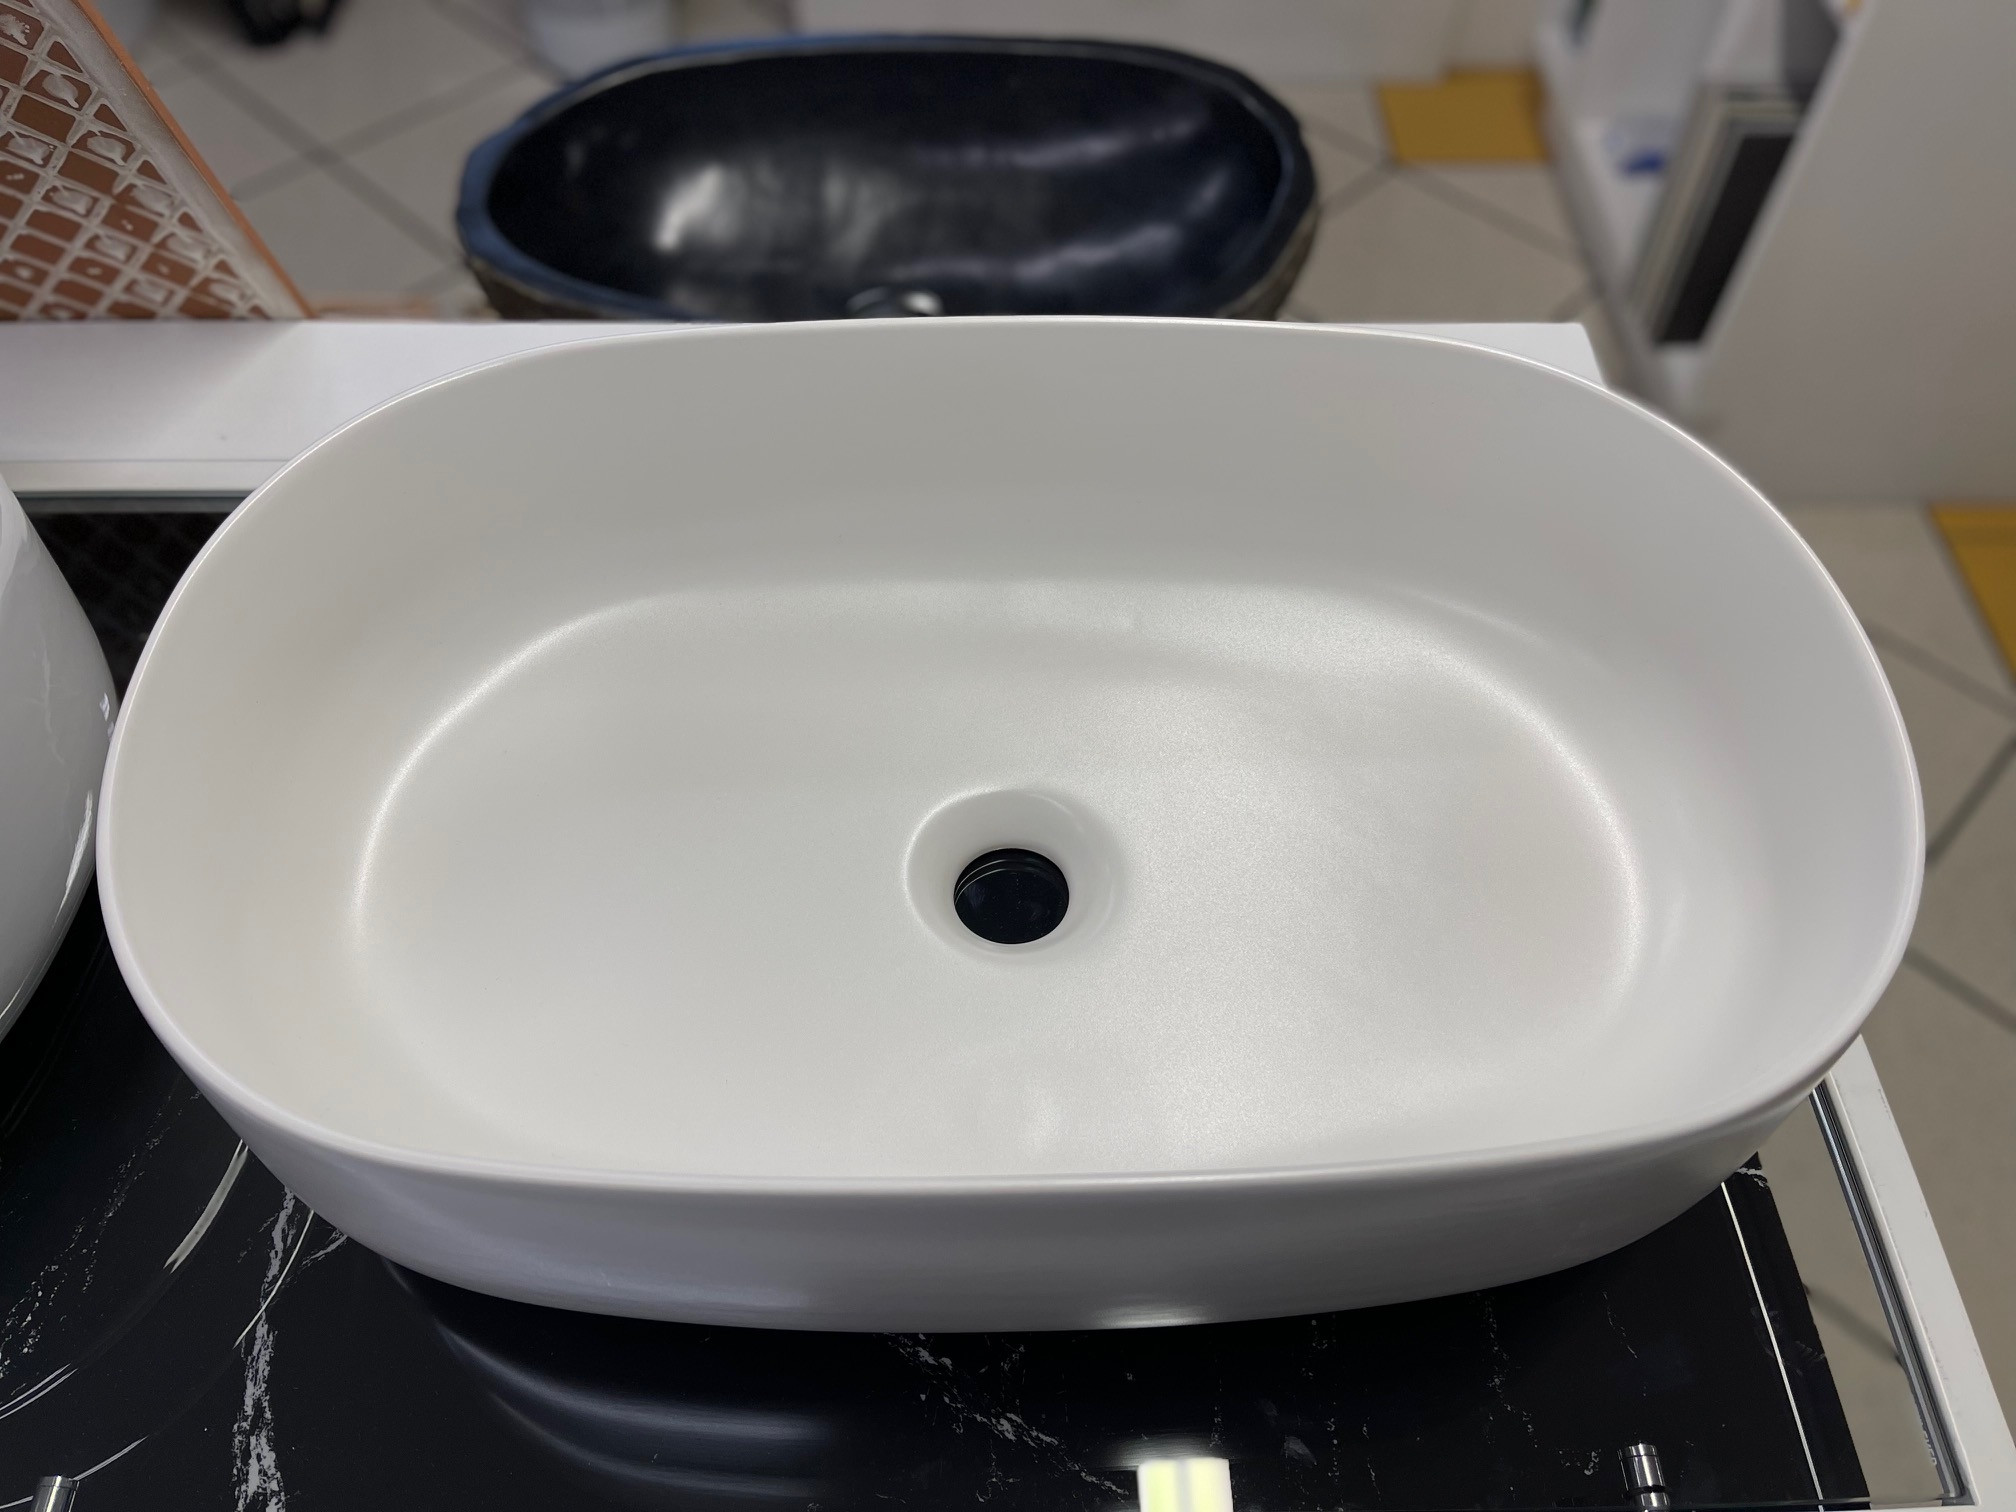 NICE countertop washbasin in MATT WHITE ceramic
